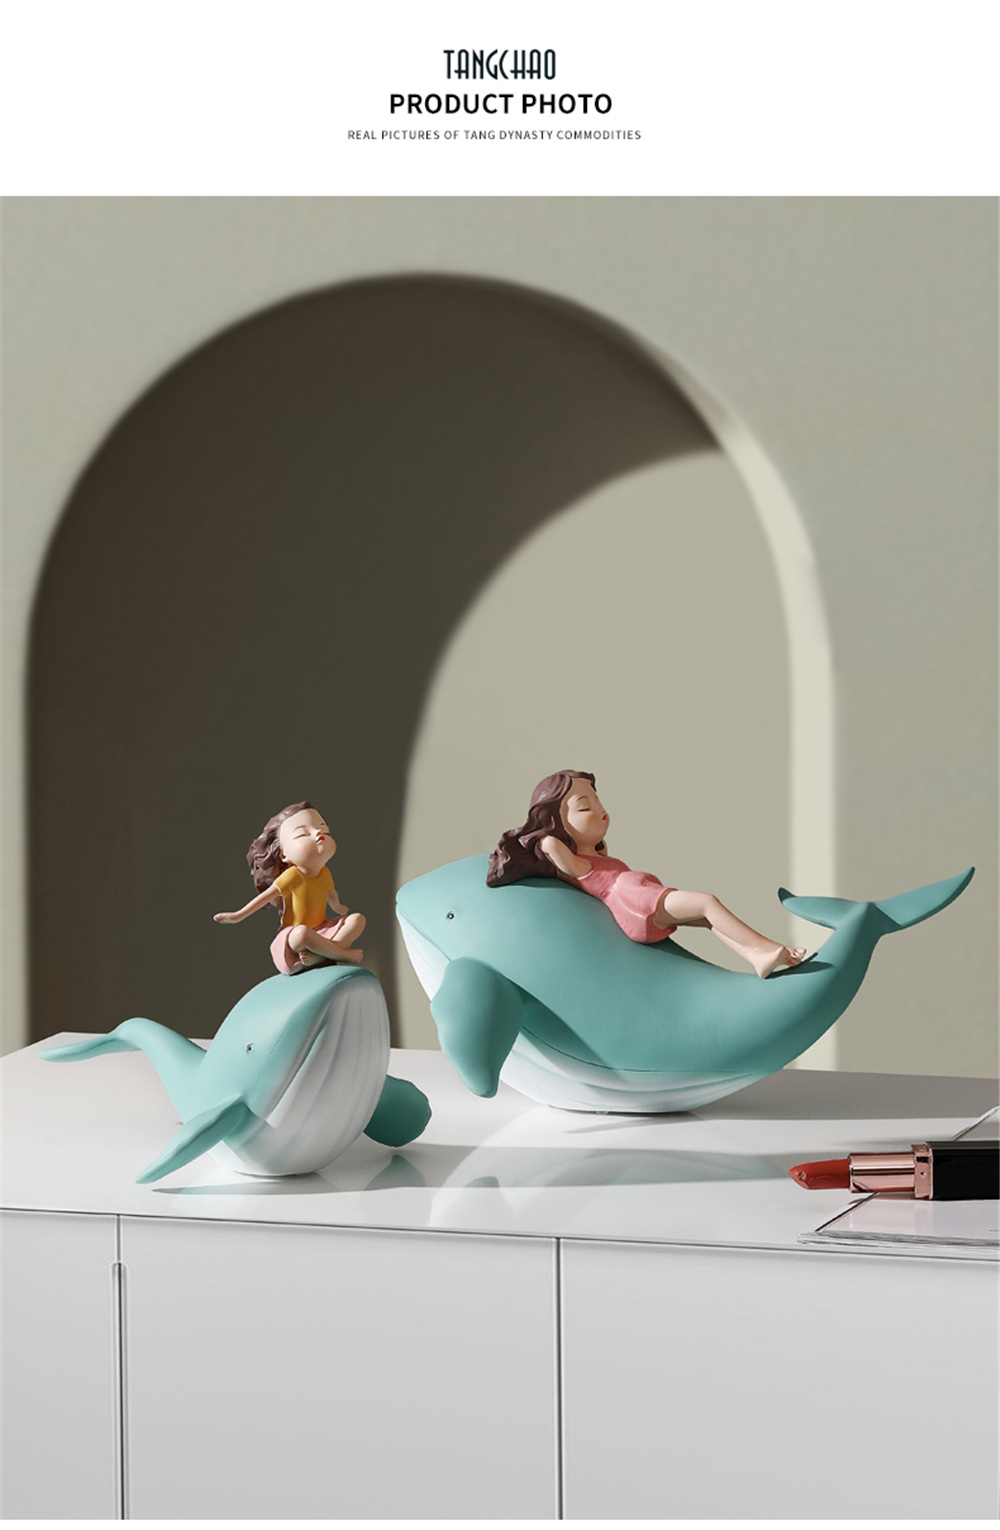 입상 고래 소녀 동상 사후 수지 홈 장식 내부 거실 사무실을위한 현대적인 인형 미학 방 장식 선물